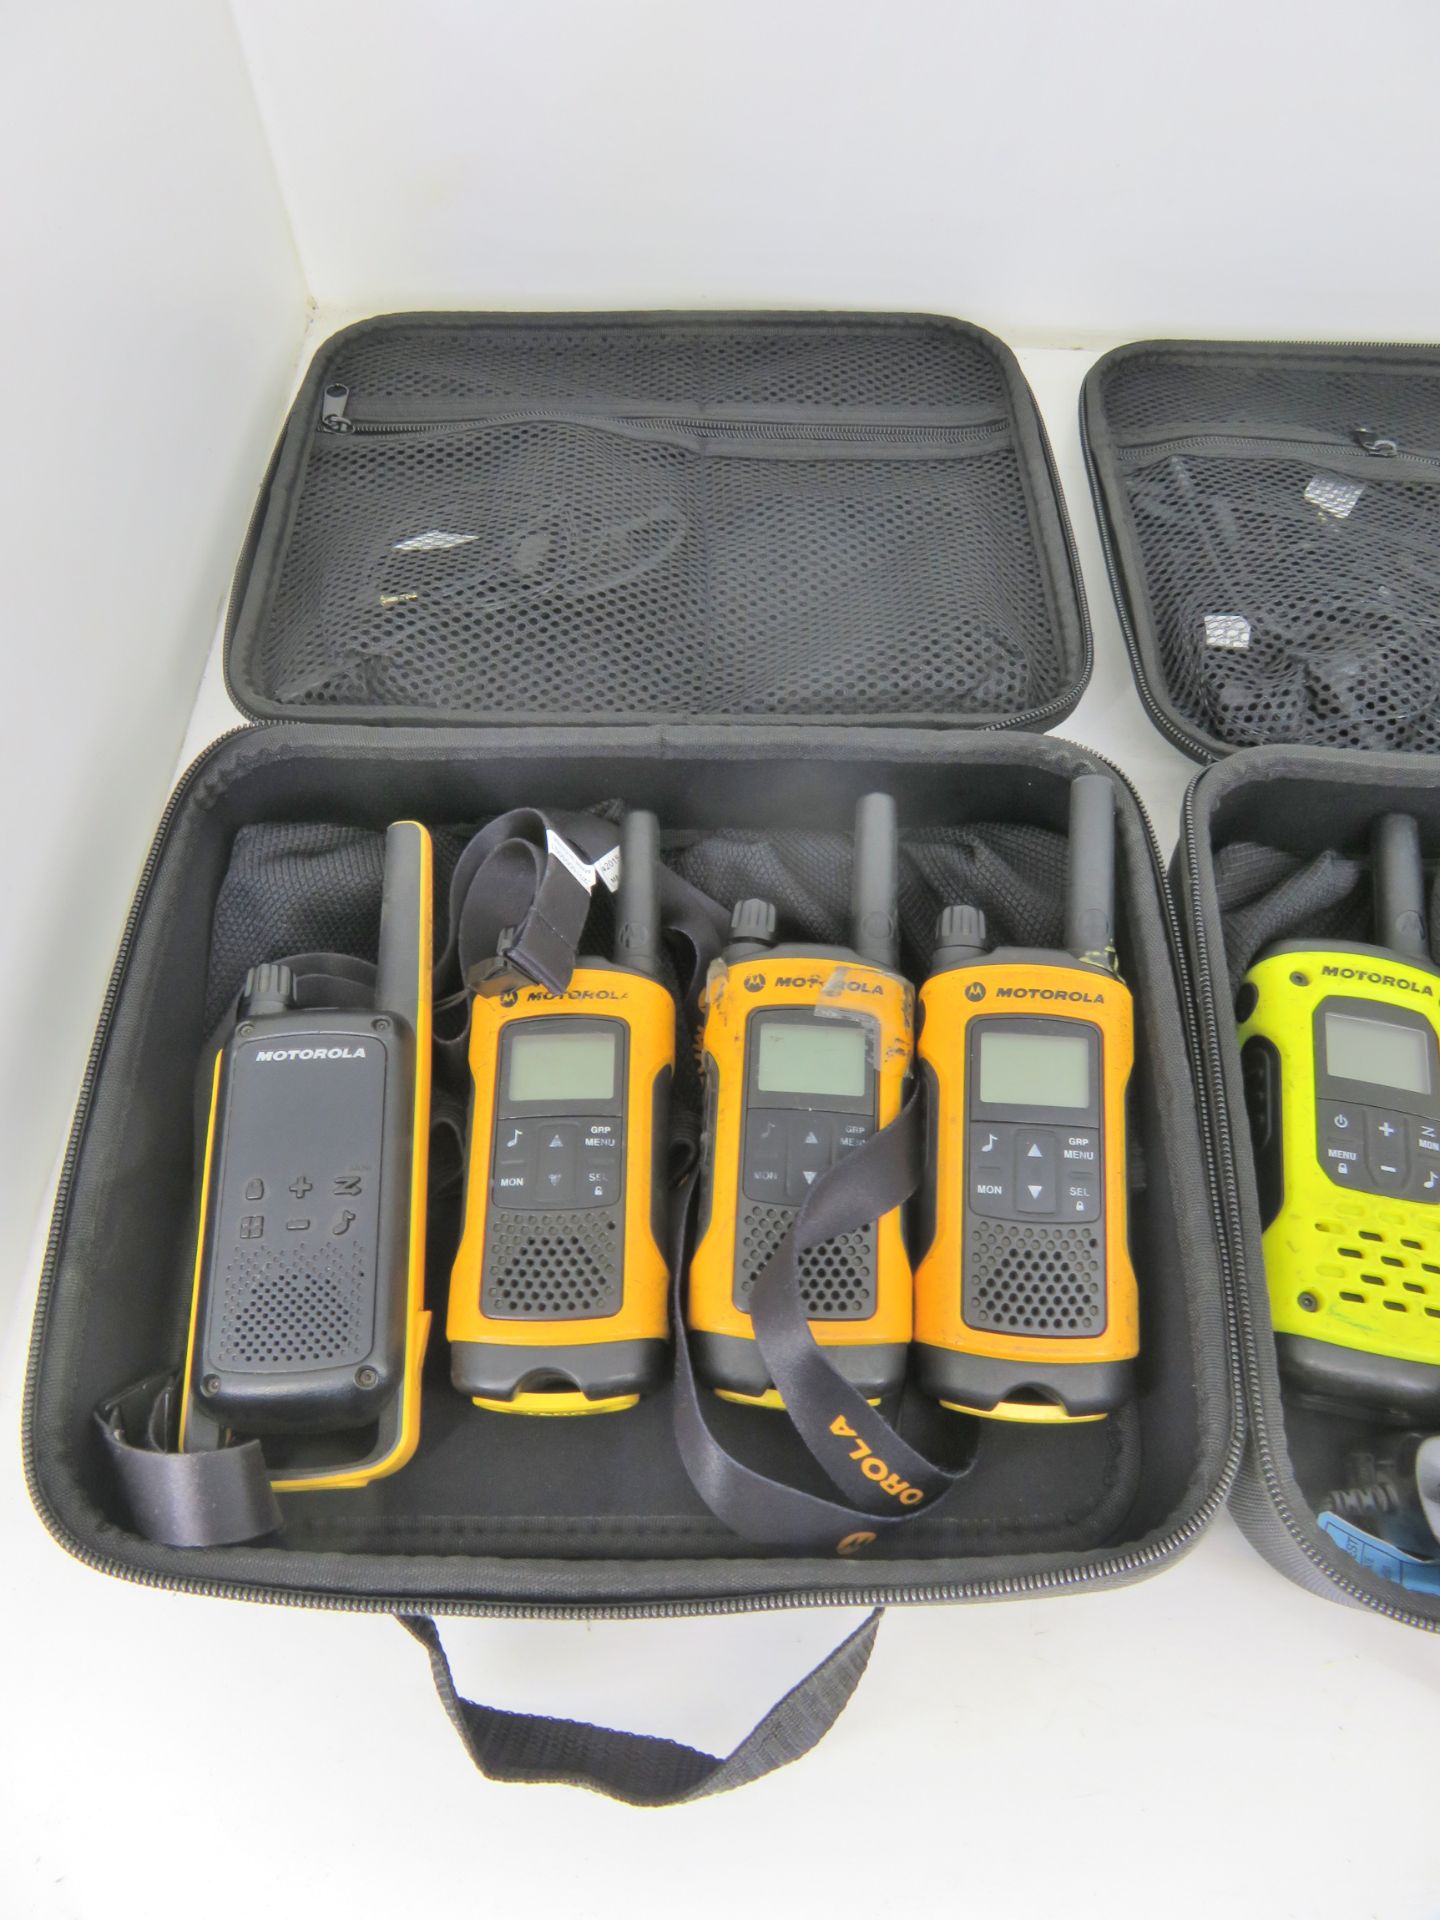 Motorola walkie talkies in case - AS SPARES OR REPAIRS - Image 3 of 4